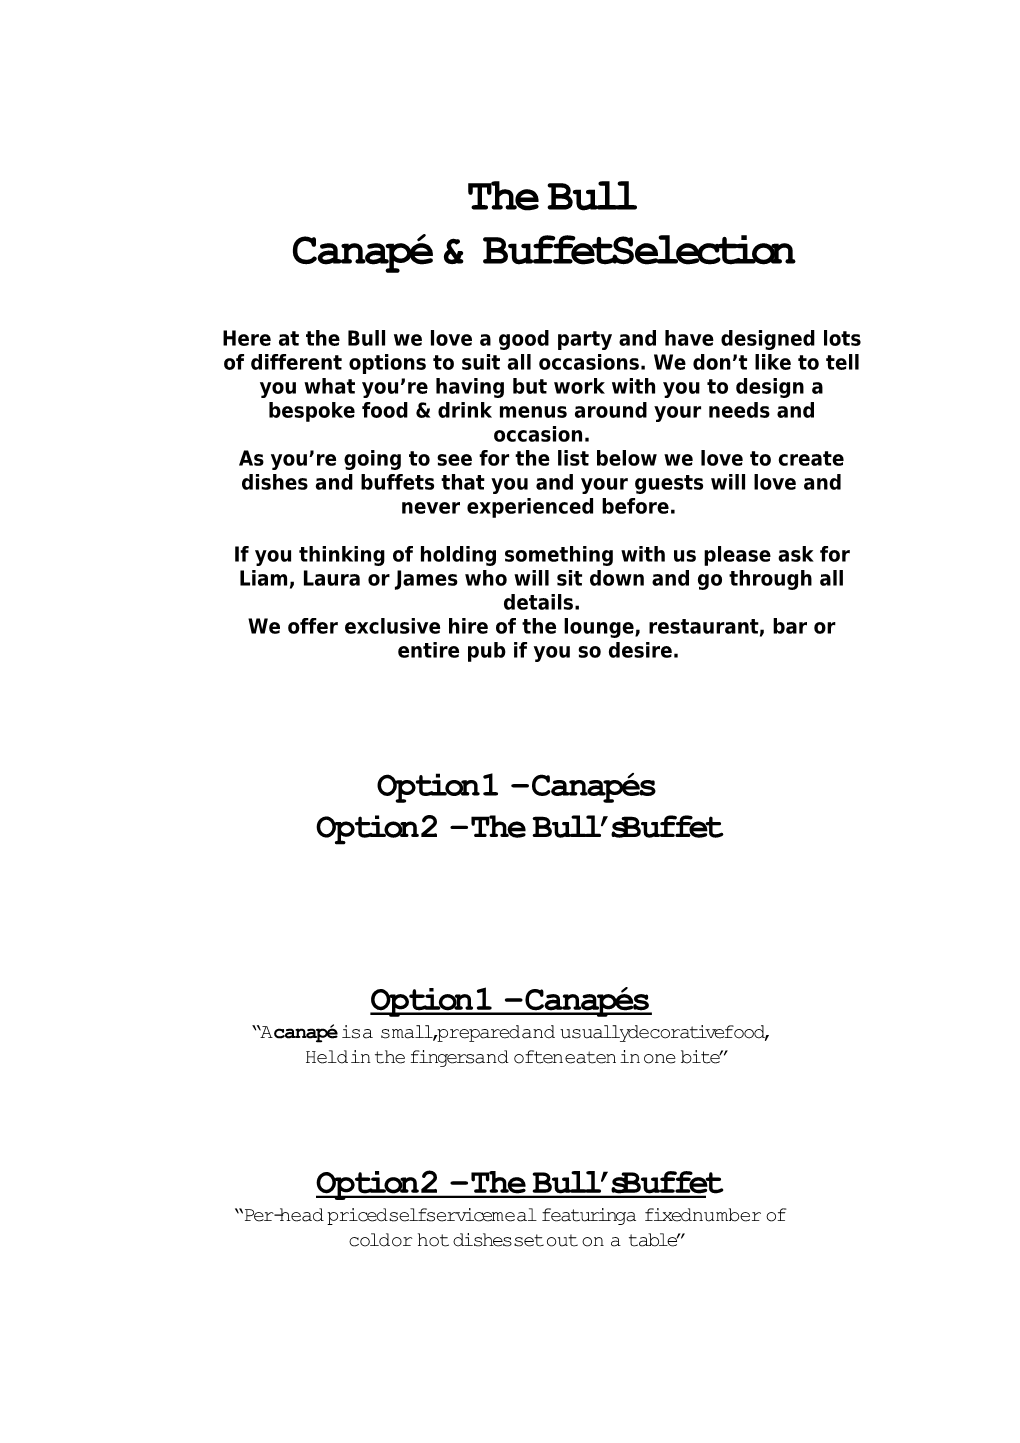 Canapé & Buffet Selection